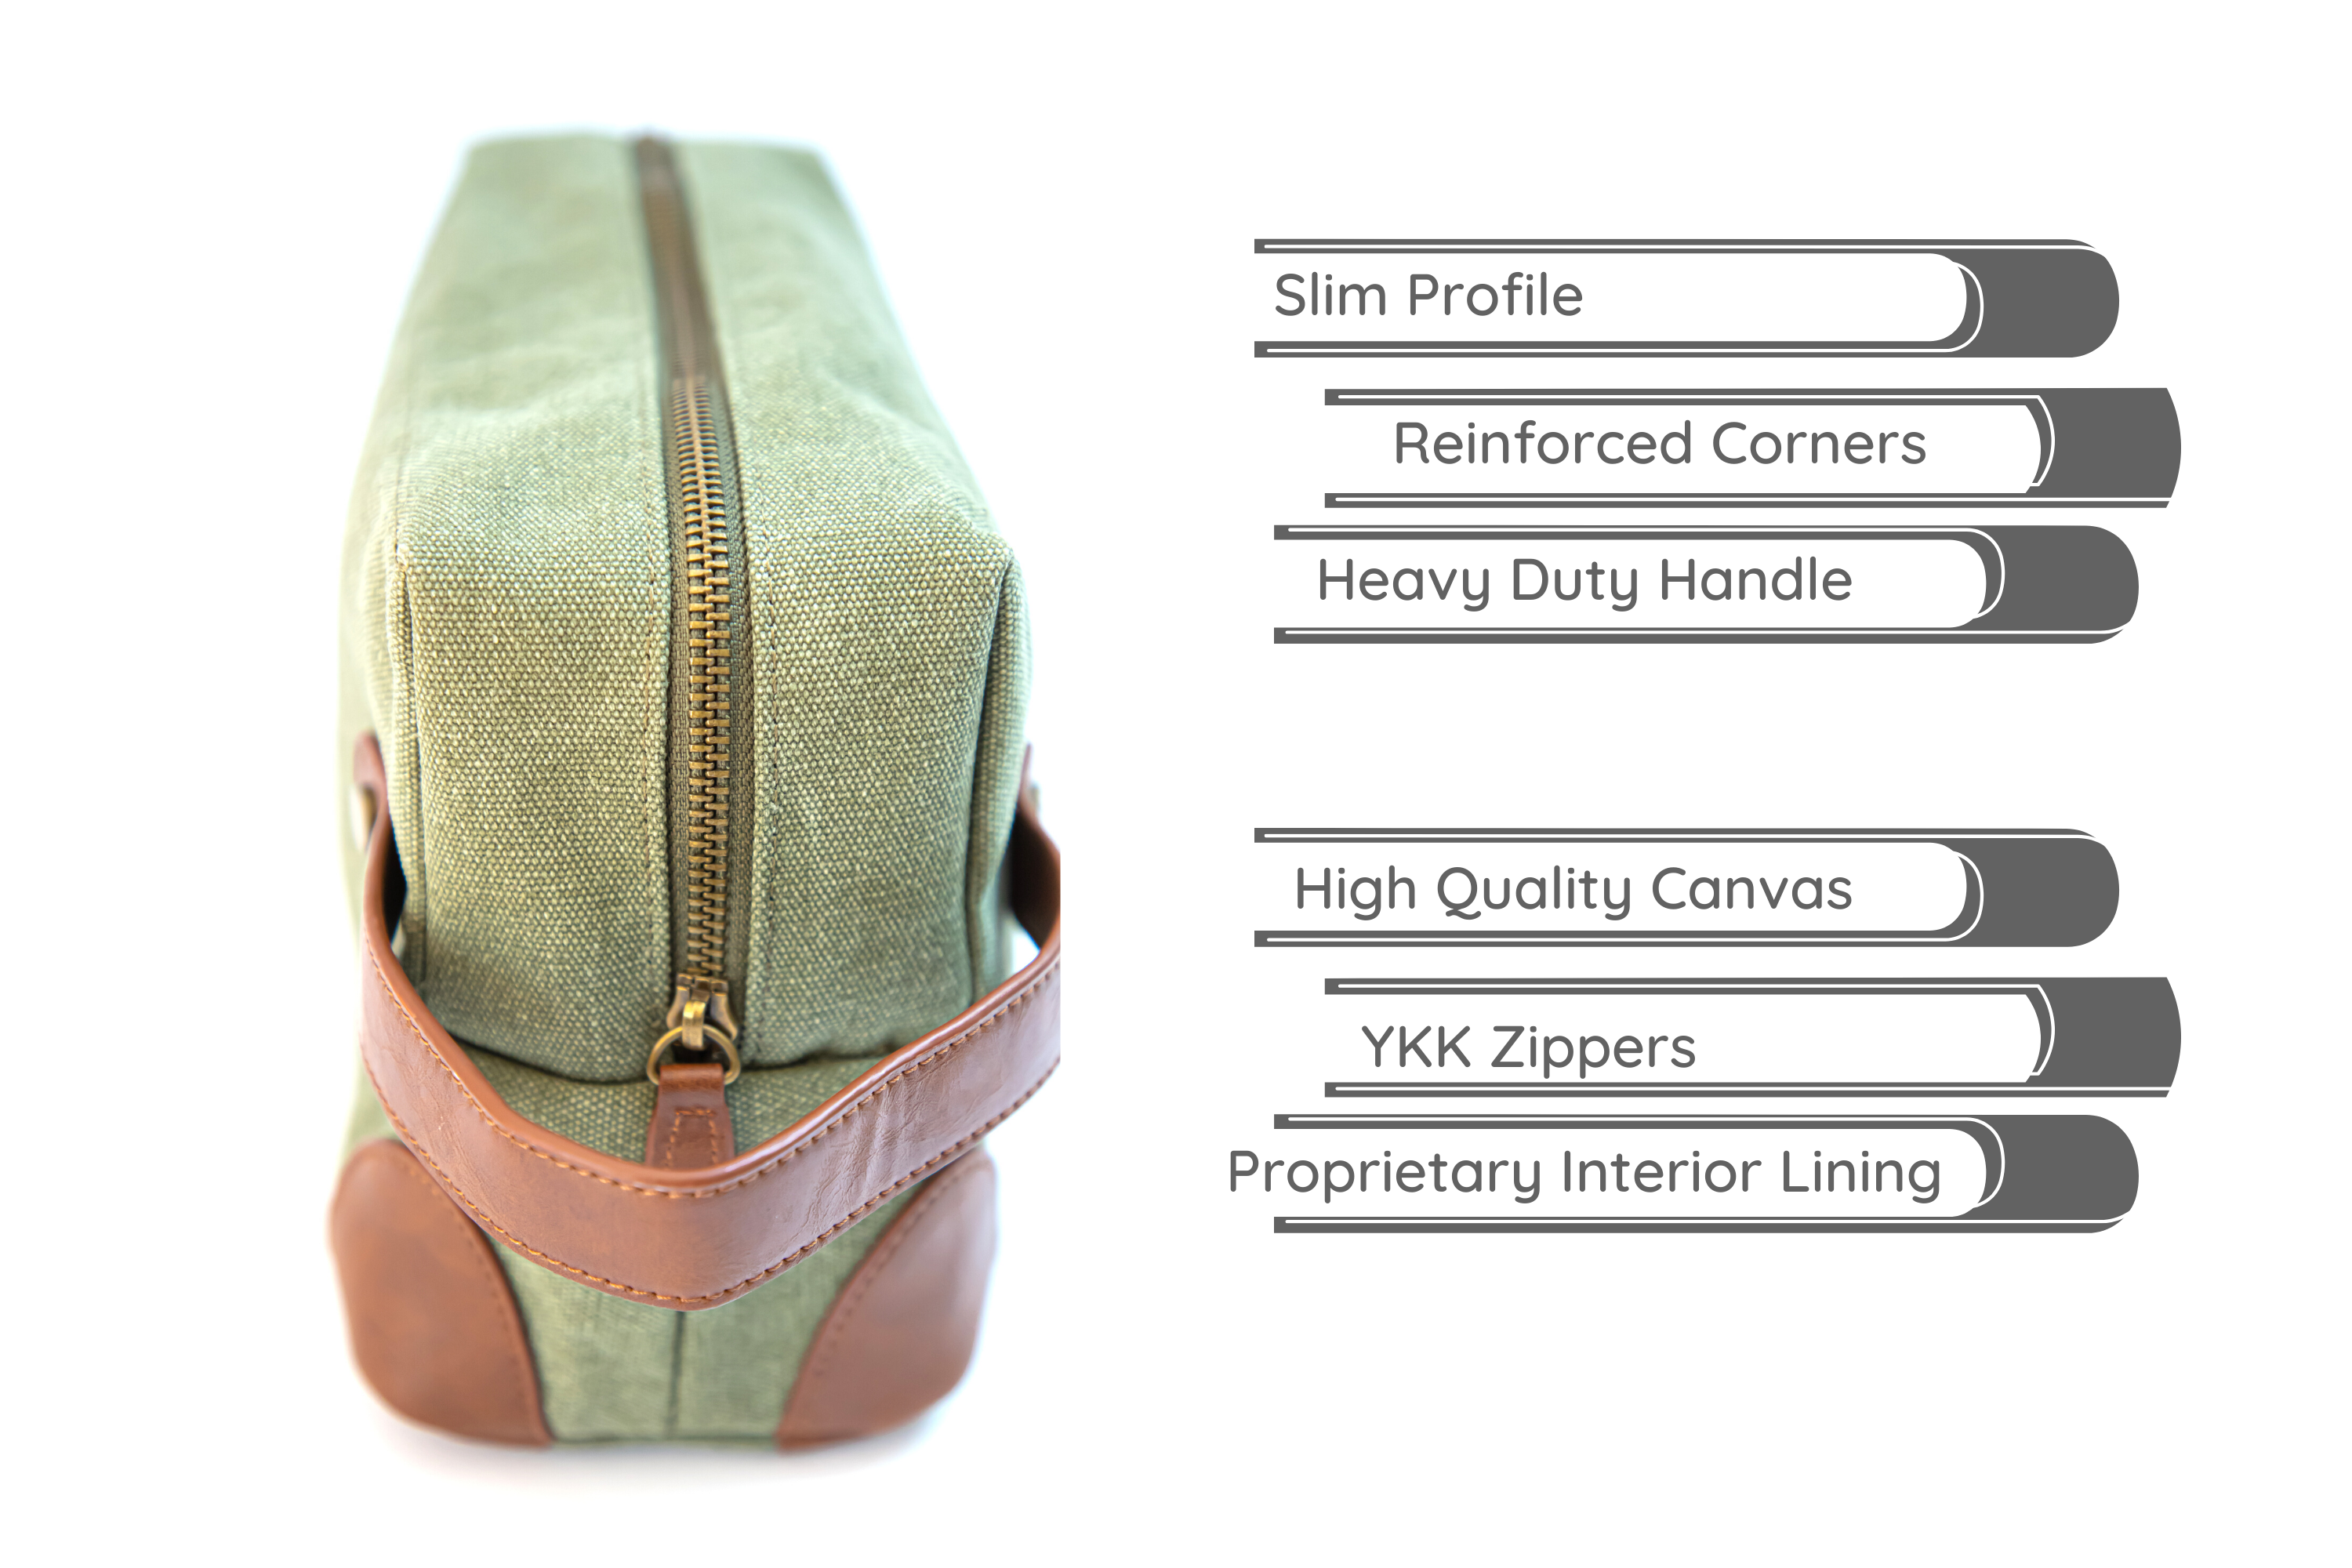 The Leo Dopp Kit For Men With Style - Vetelli